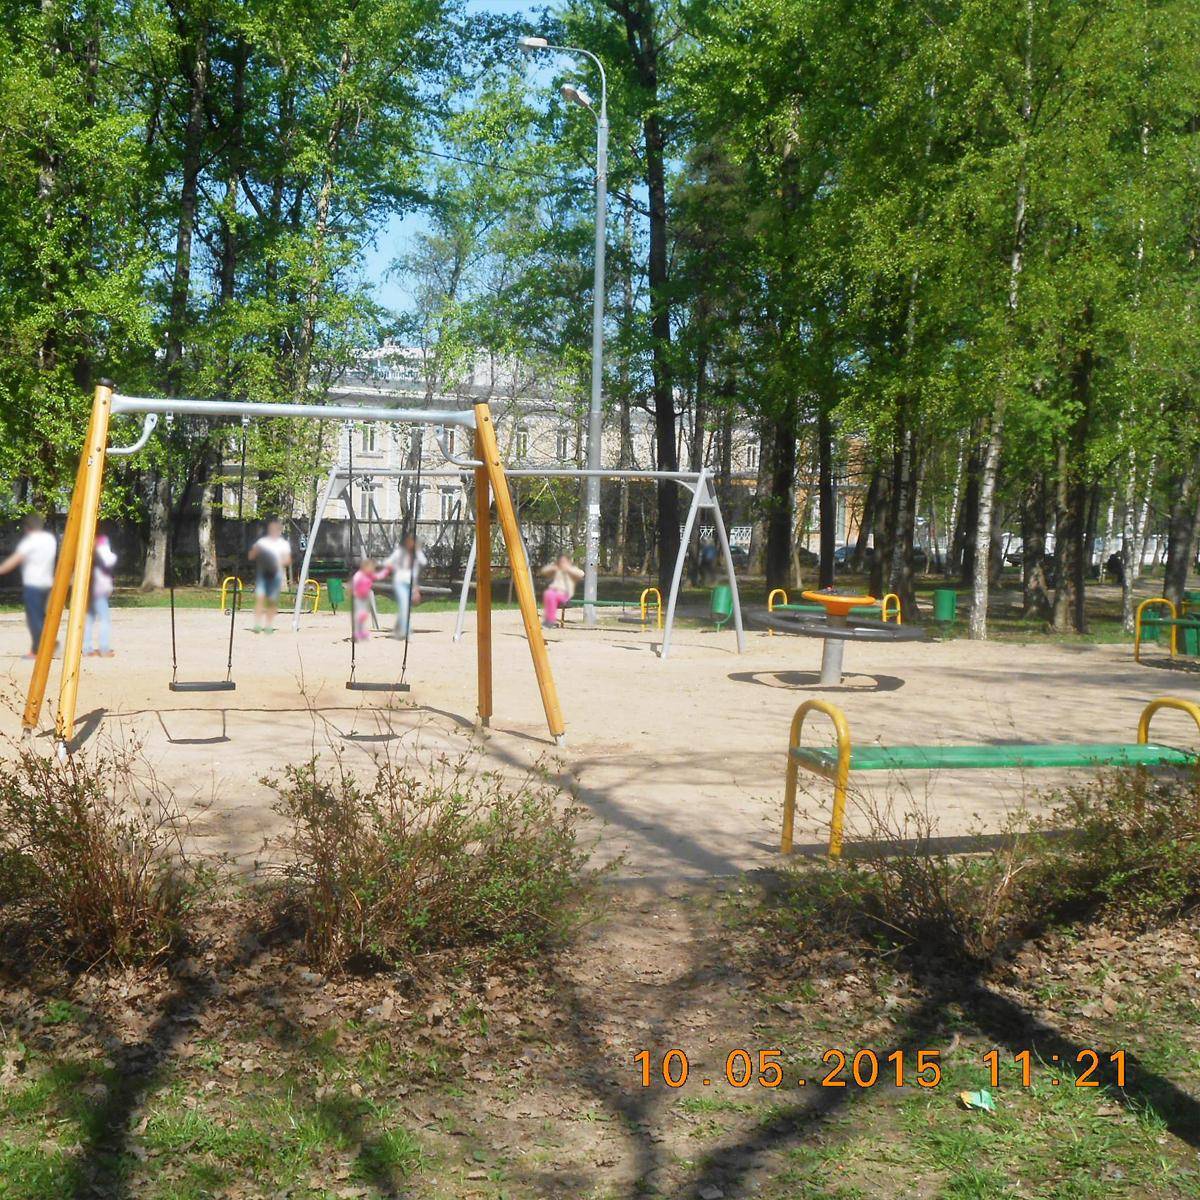 Фото: Площадка детская игровая в парке, Парк Вагоноремонт